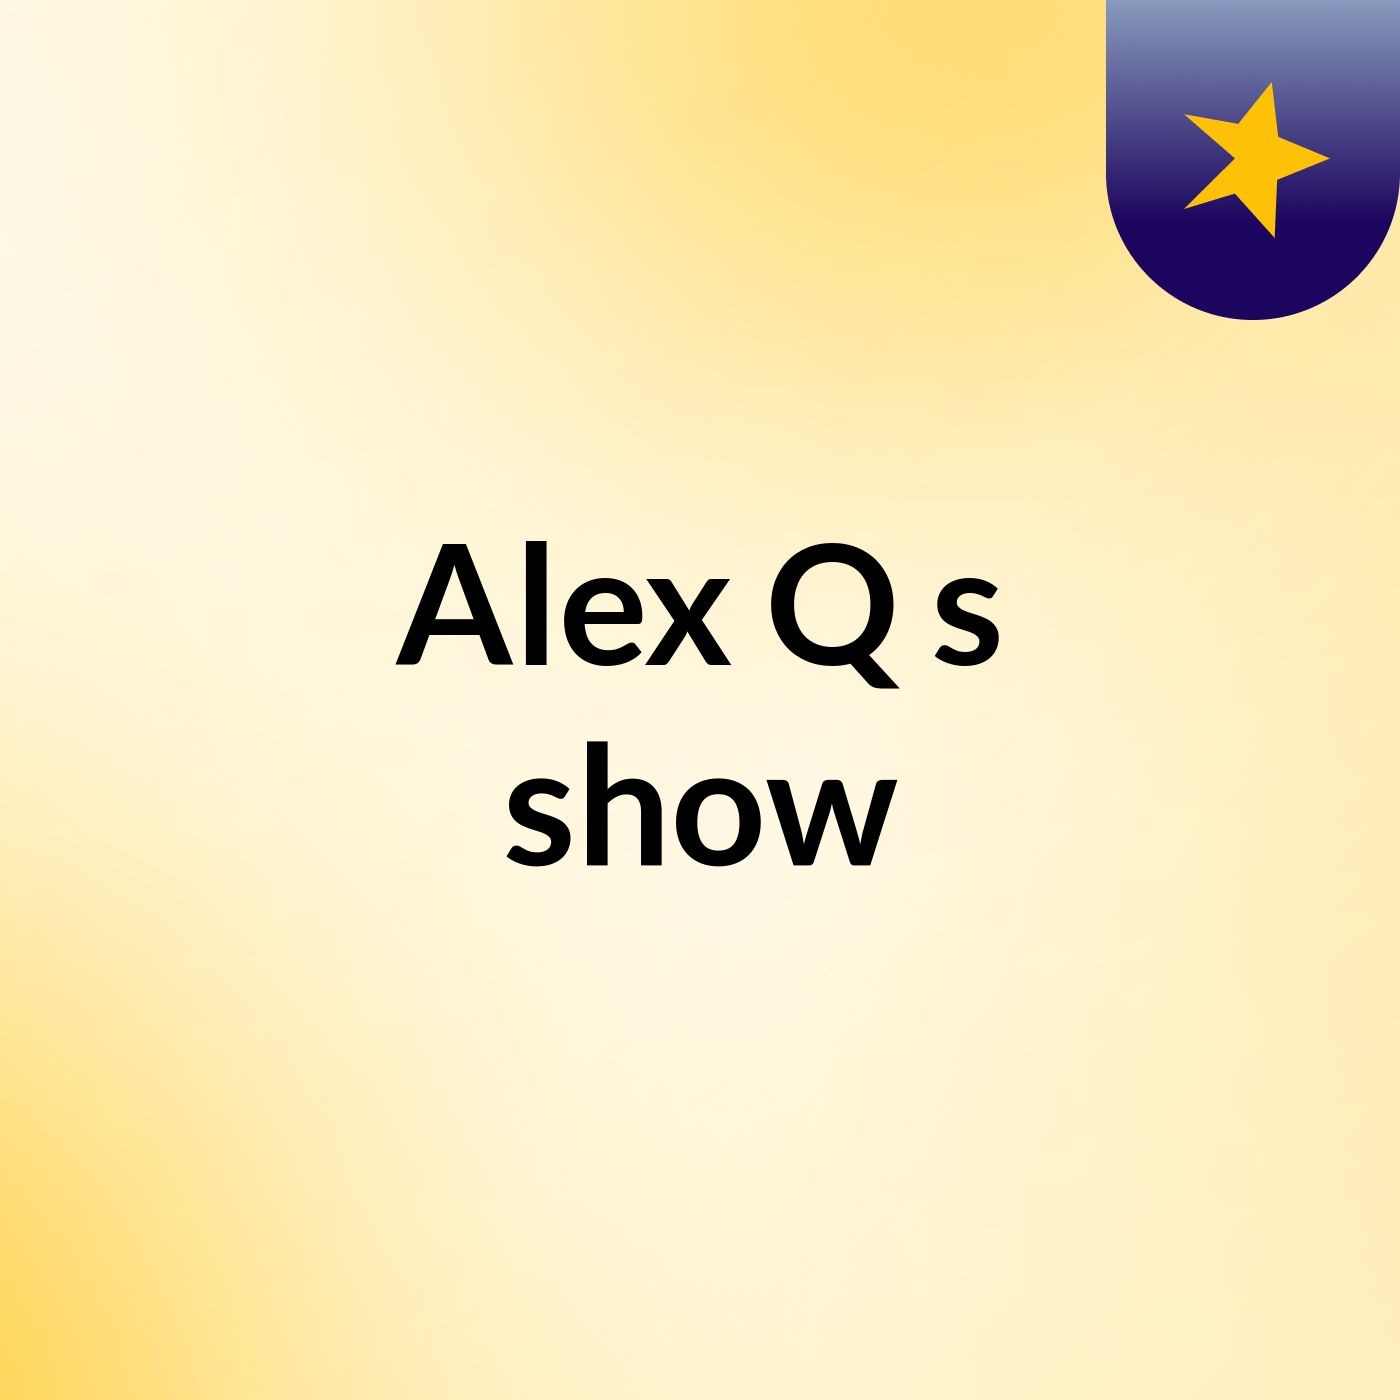 Alex Q's show